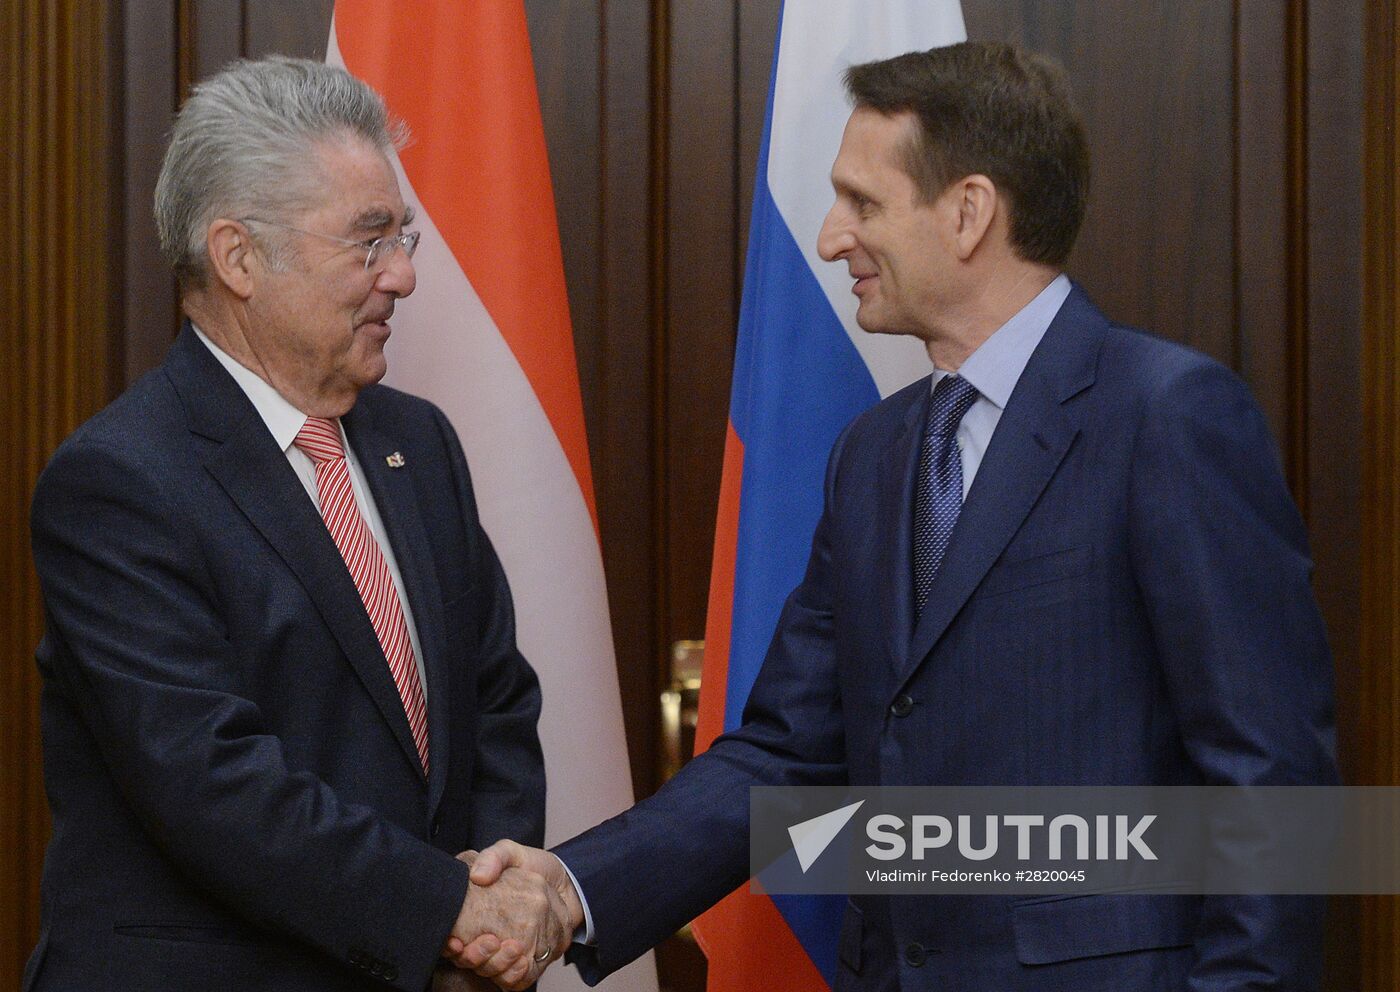 State Duma Speaker Sergei Naryshkin meets with Austrian President Heinz Fischer